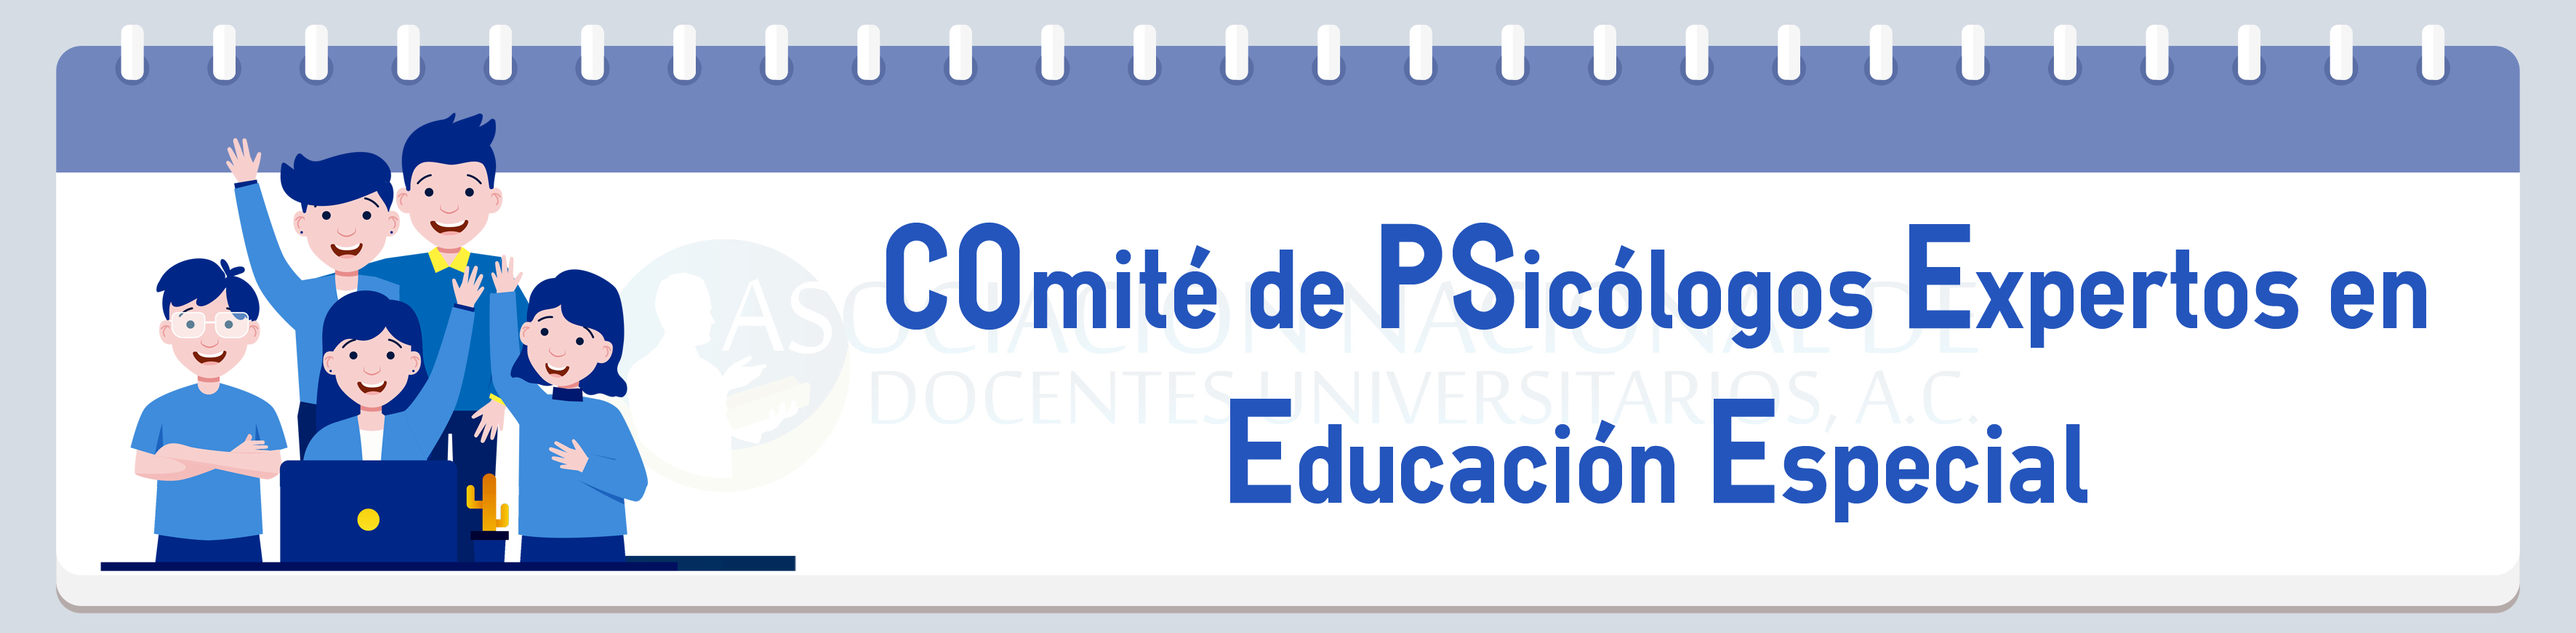 psicologos_educacion_especial_banner.png